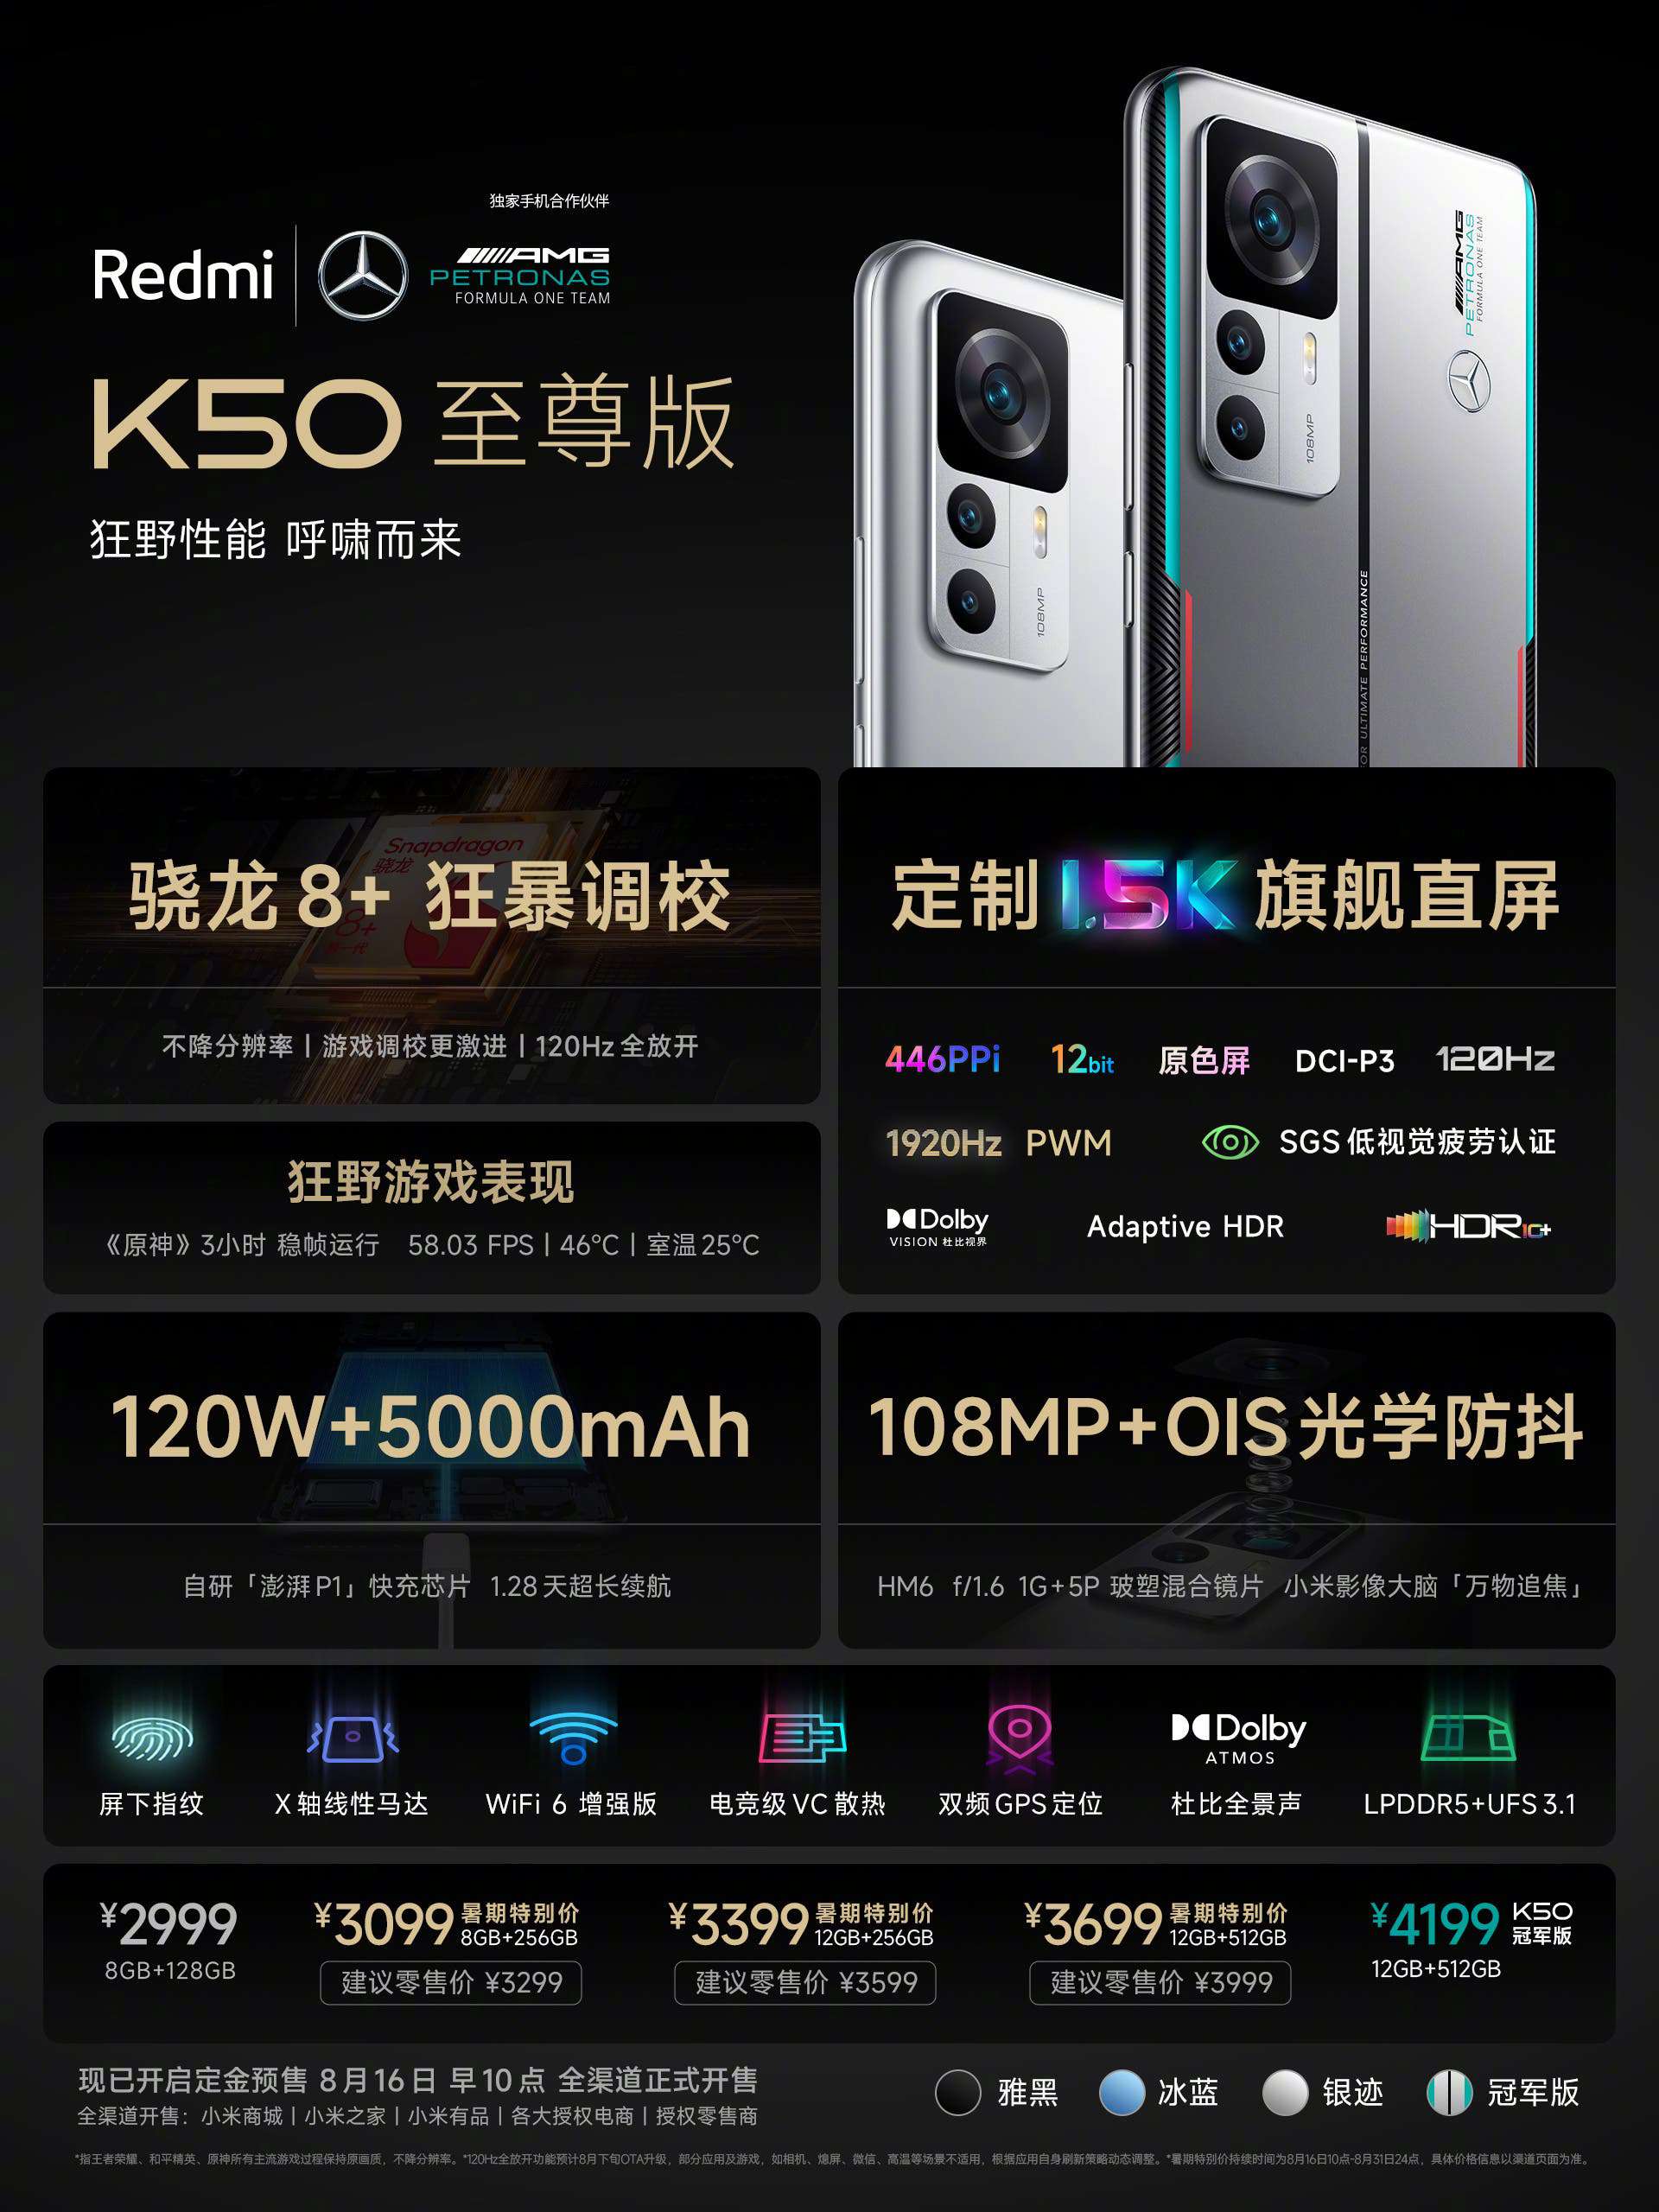 Redmi K50 Ultra specs